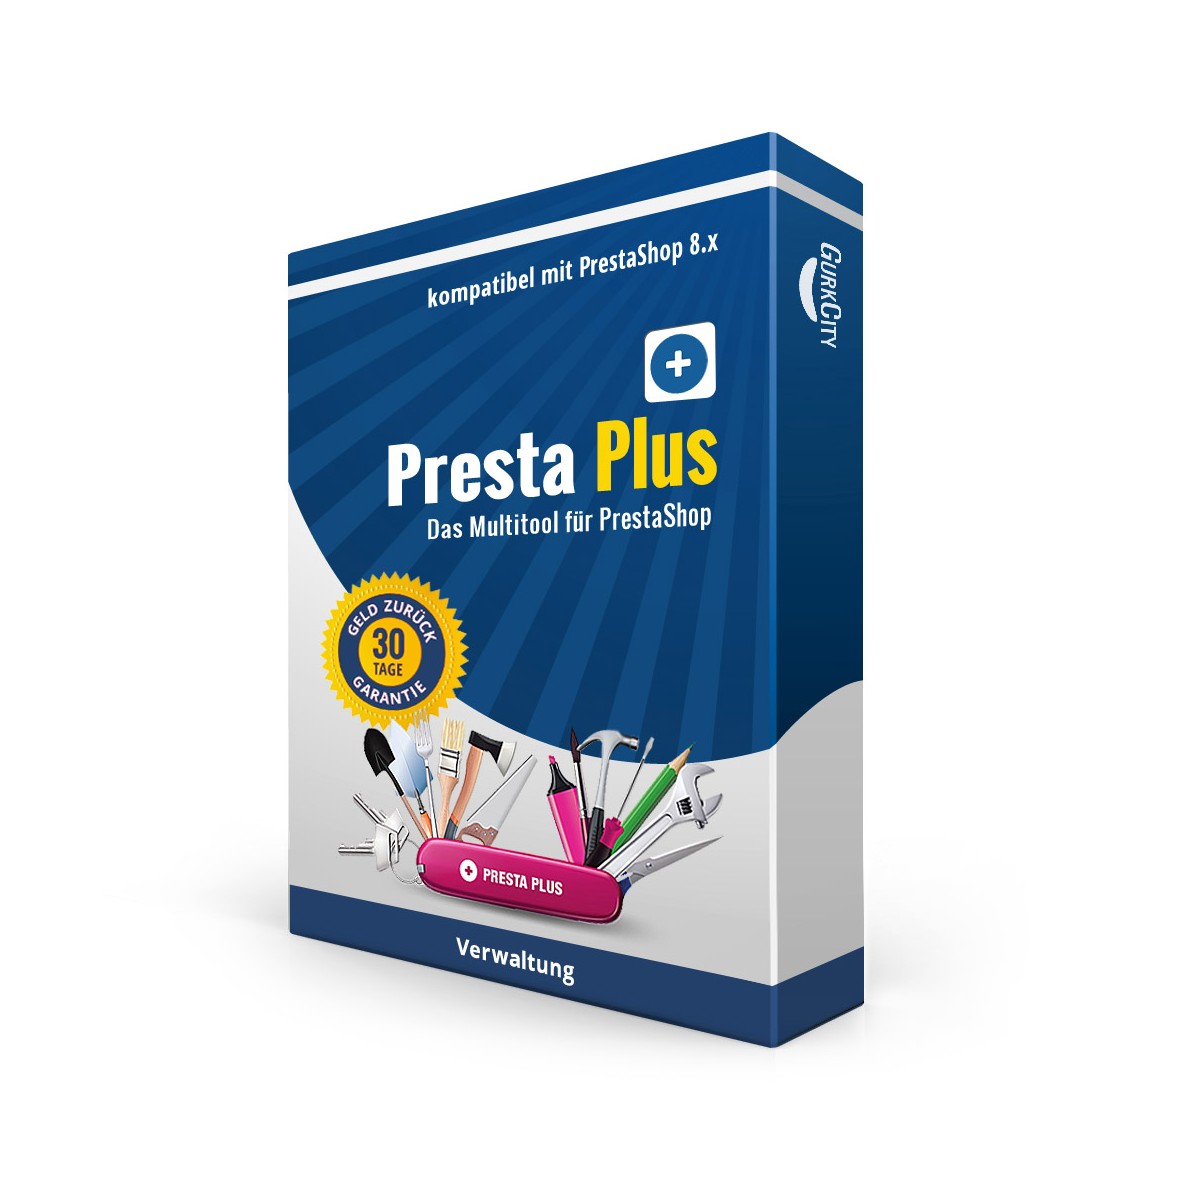 Presta Plus PrestaShop 8.x